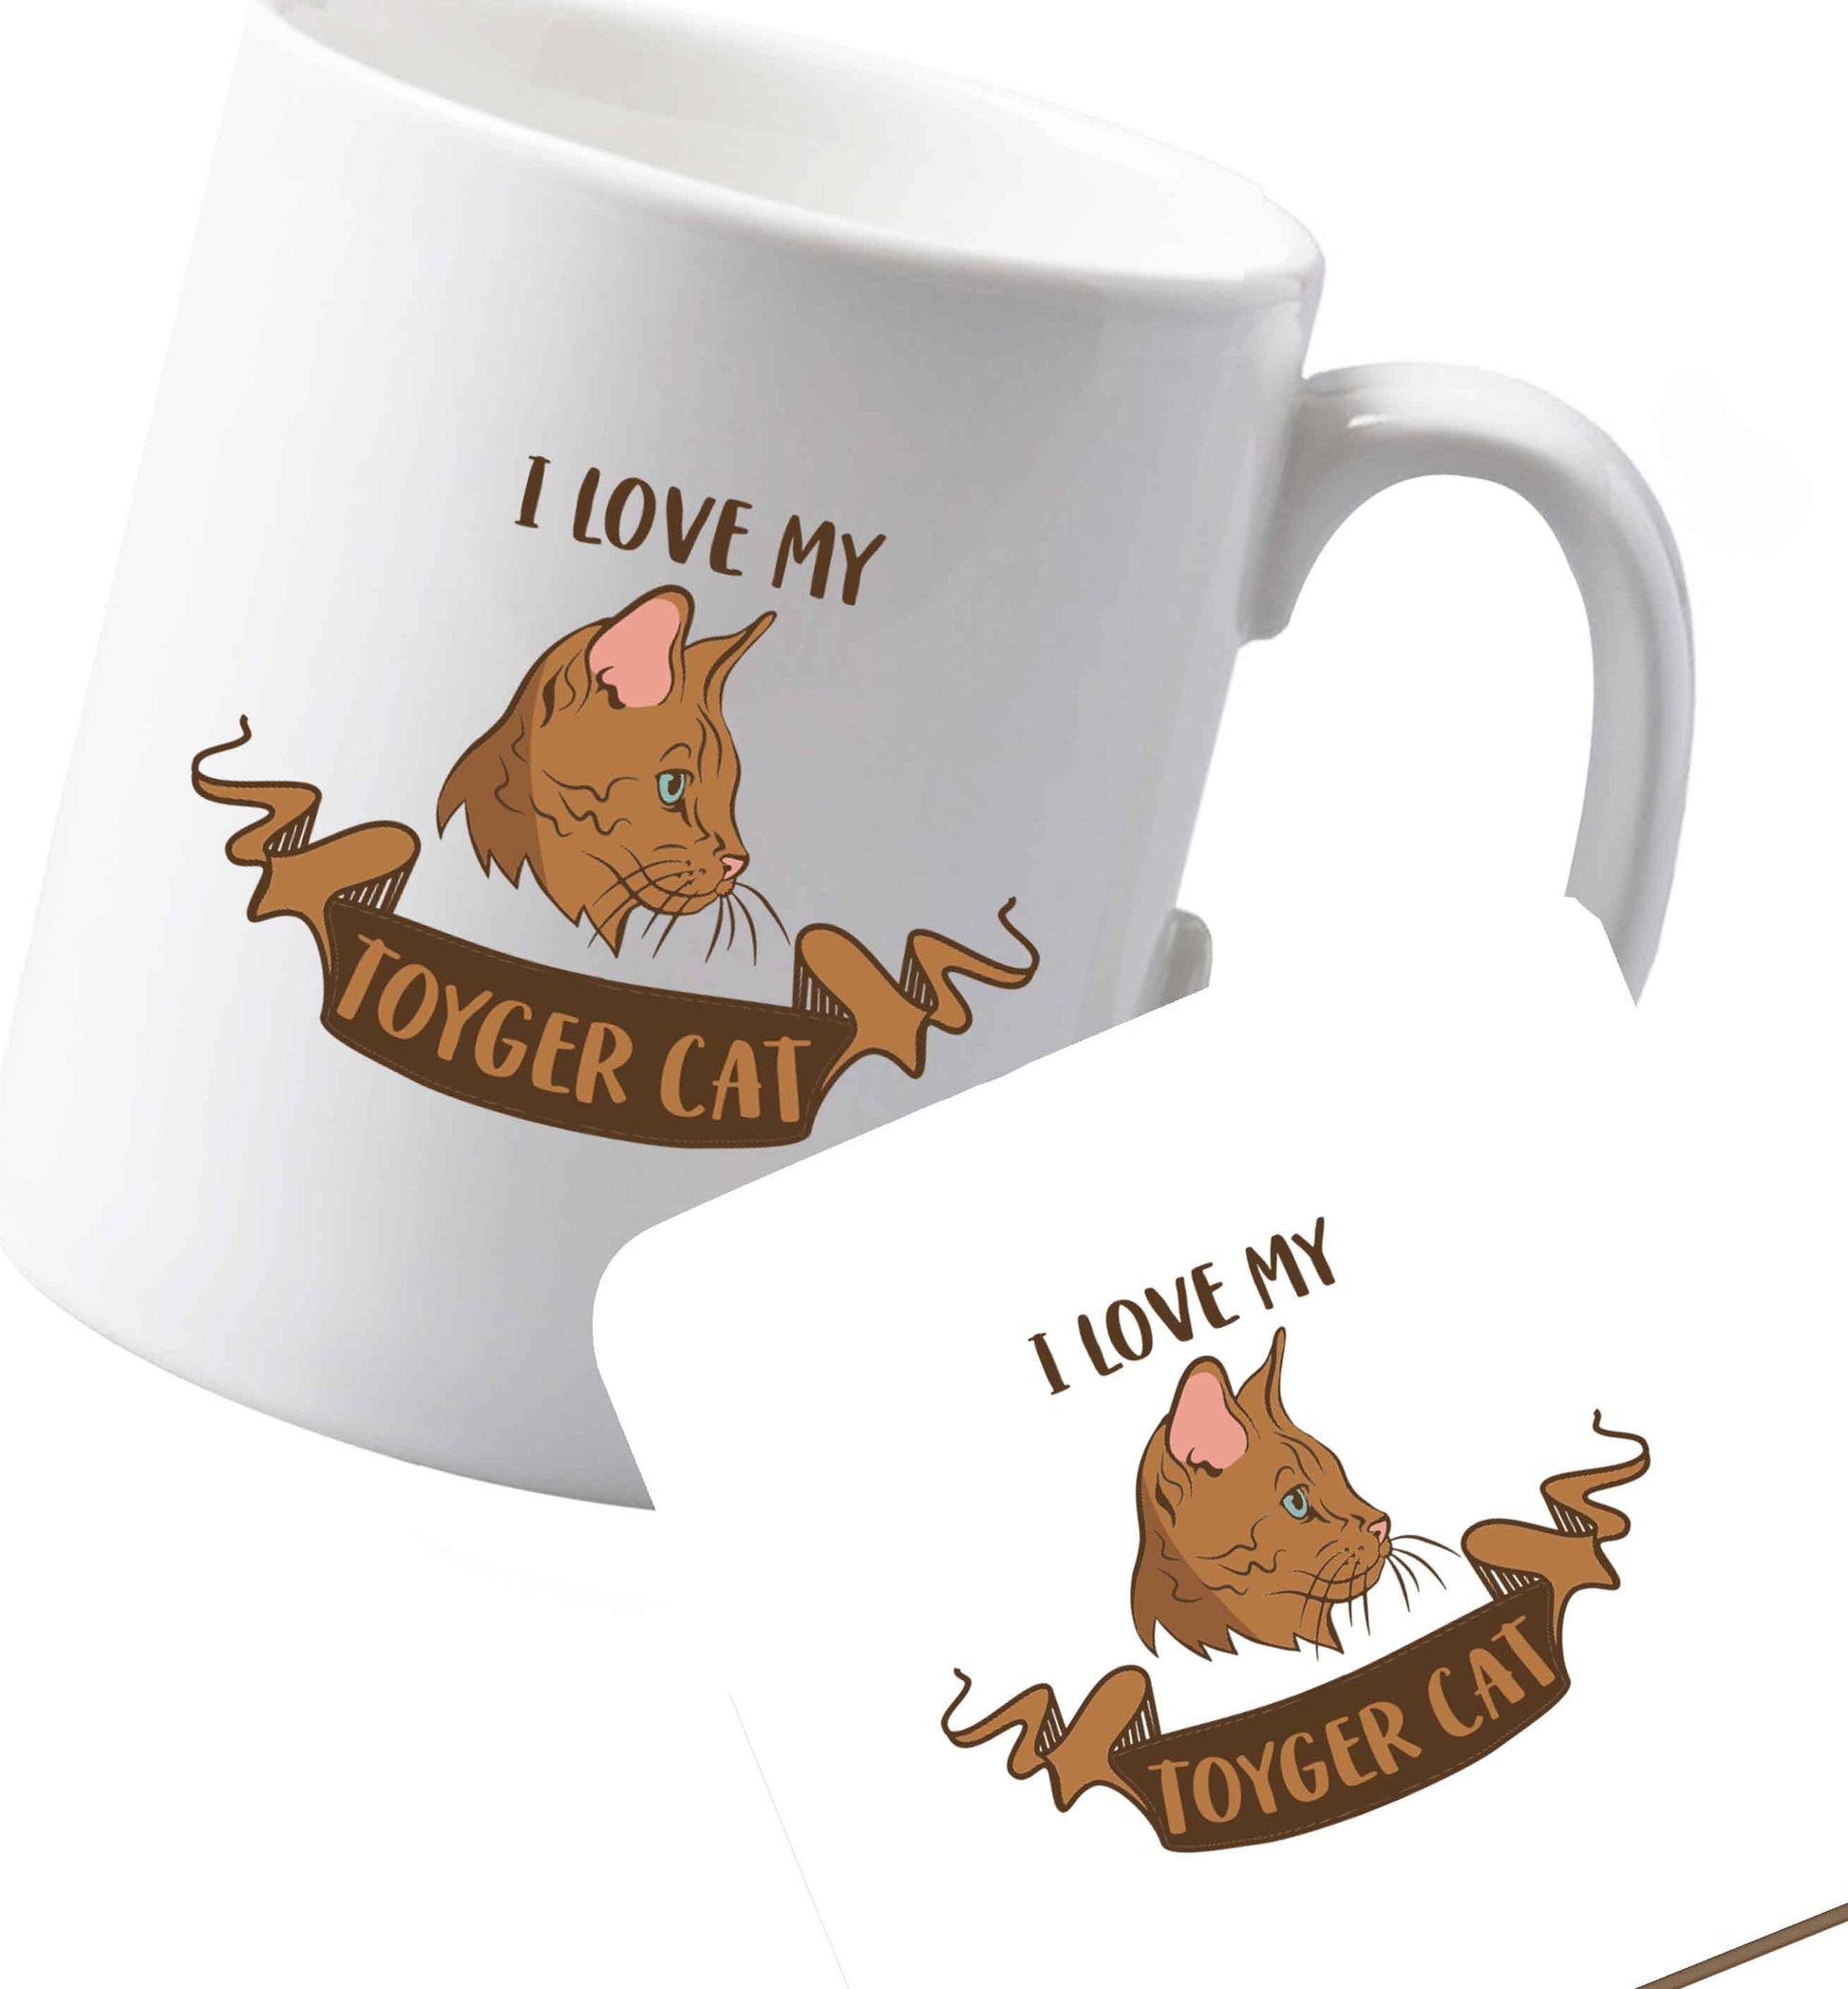 10 oz Ceramic mug and coaster I love my toyger cat both sides